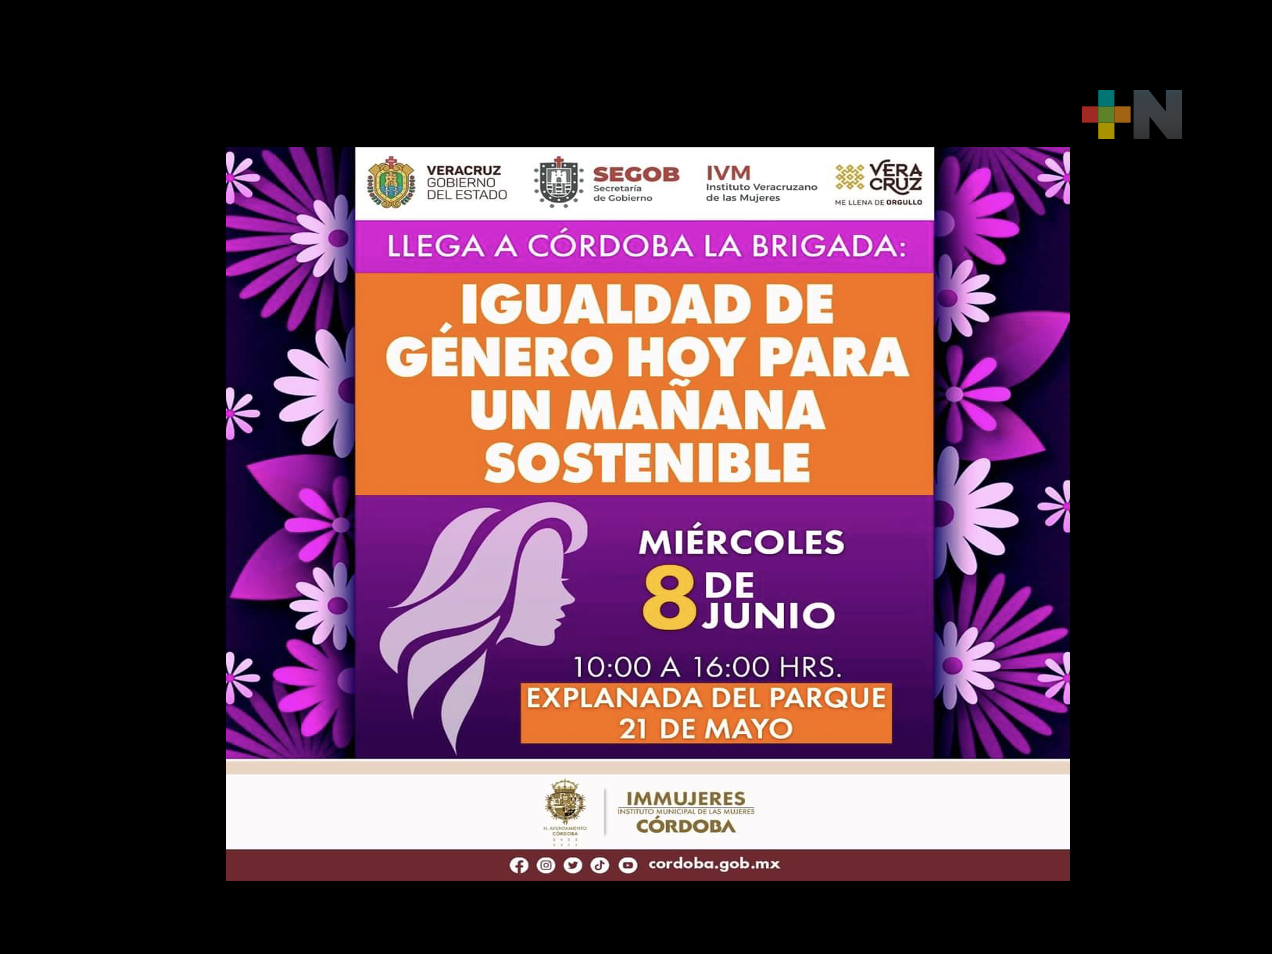 Brindarán gratuitamente Córdoba e IVM servicios médicos y legales a mujeres